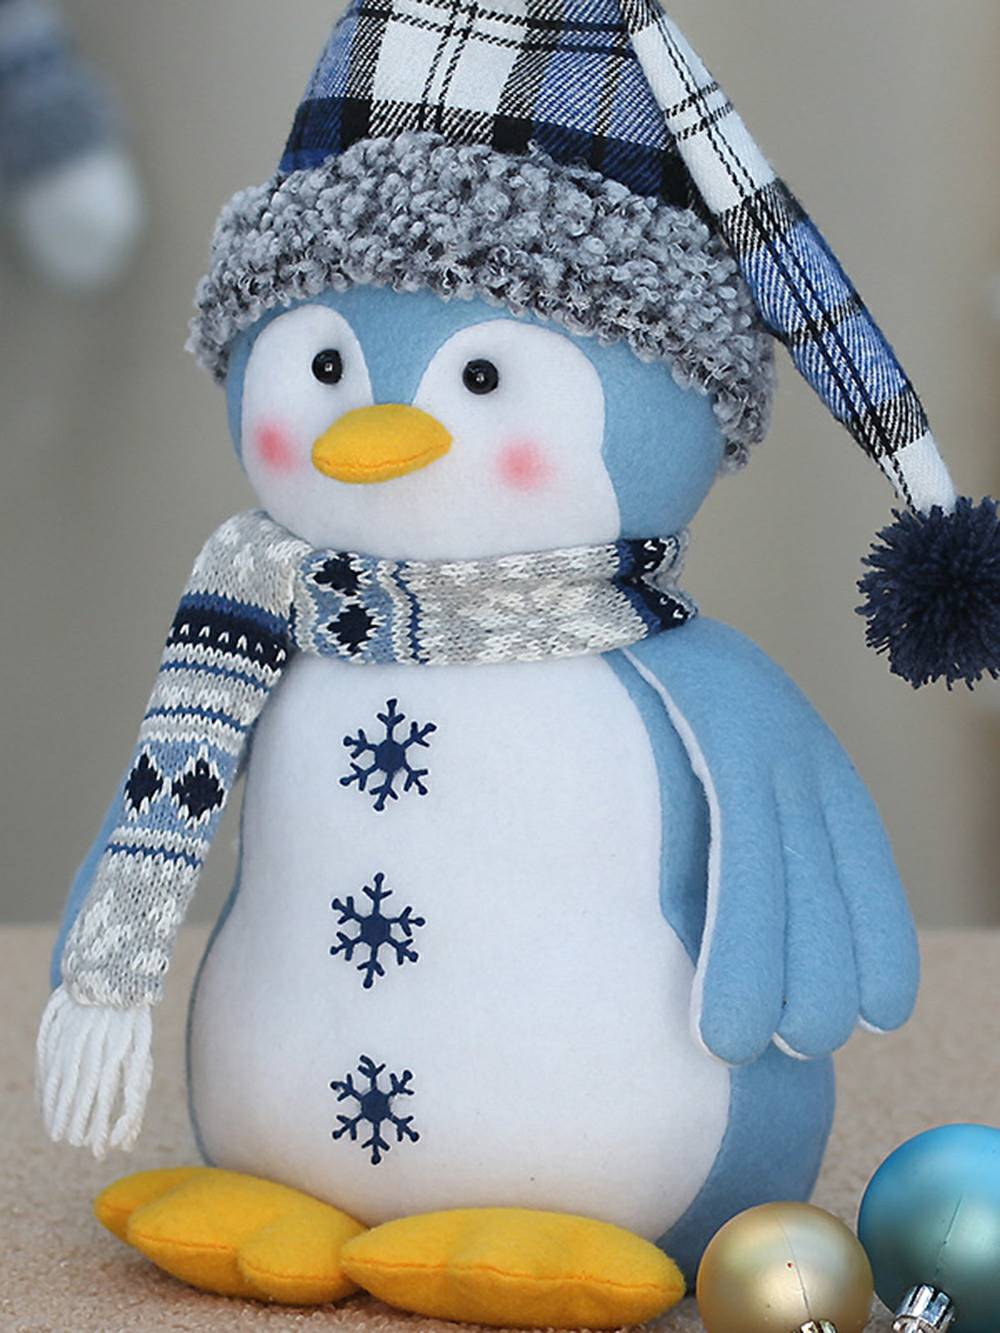 Χριστουγεννιάτικα μπλε υφασμάτινα στολίδια κούκλας πιγκουίνος πολική αρκούδα